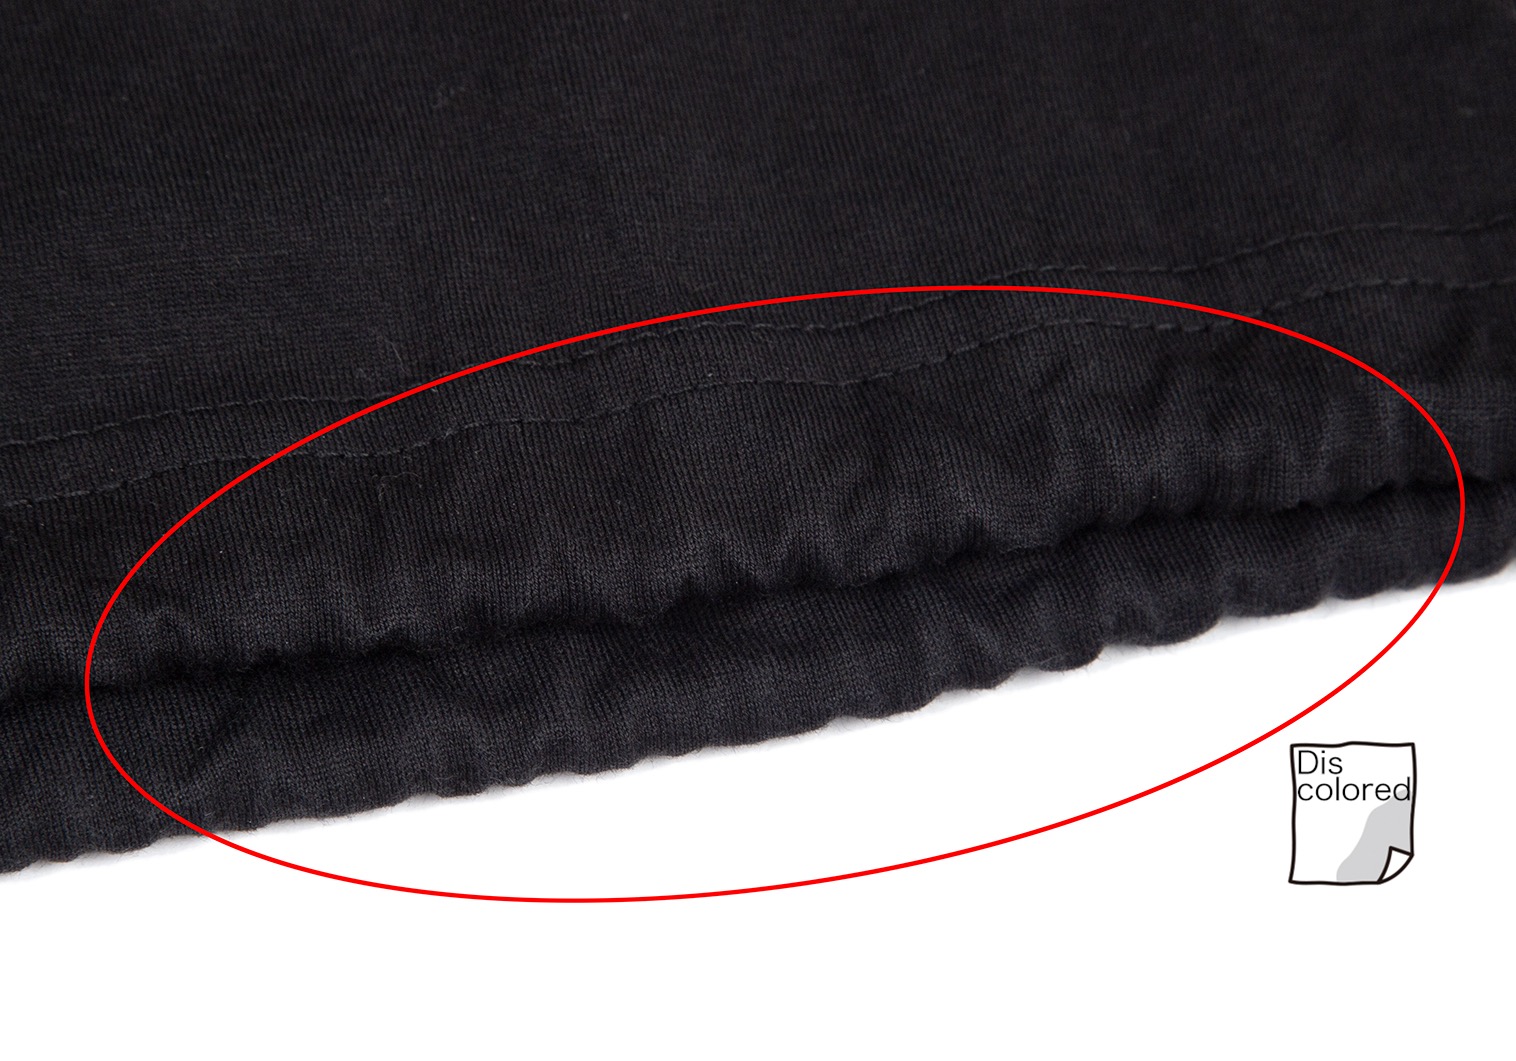 ワイスリーY-3 裾絞りビッグシルエットTシャツ 黒M